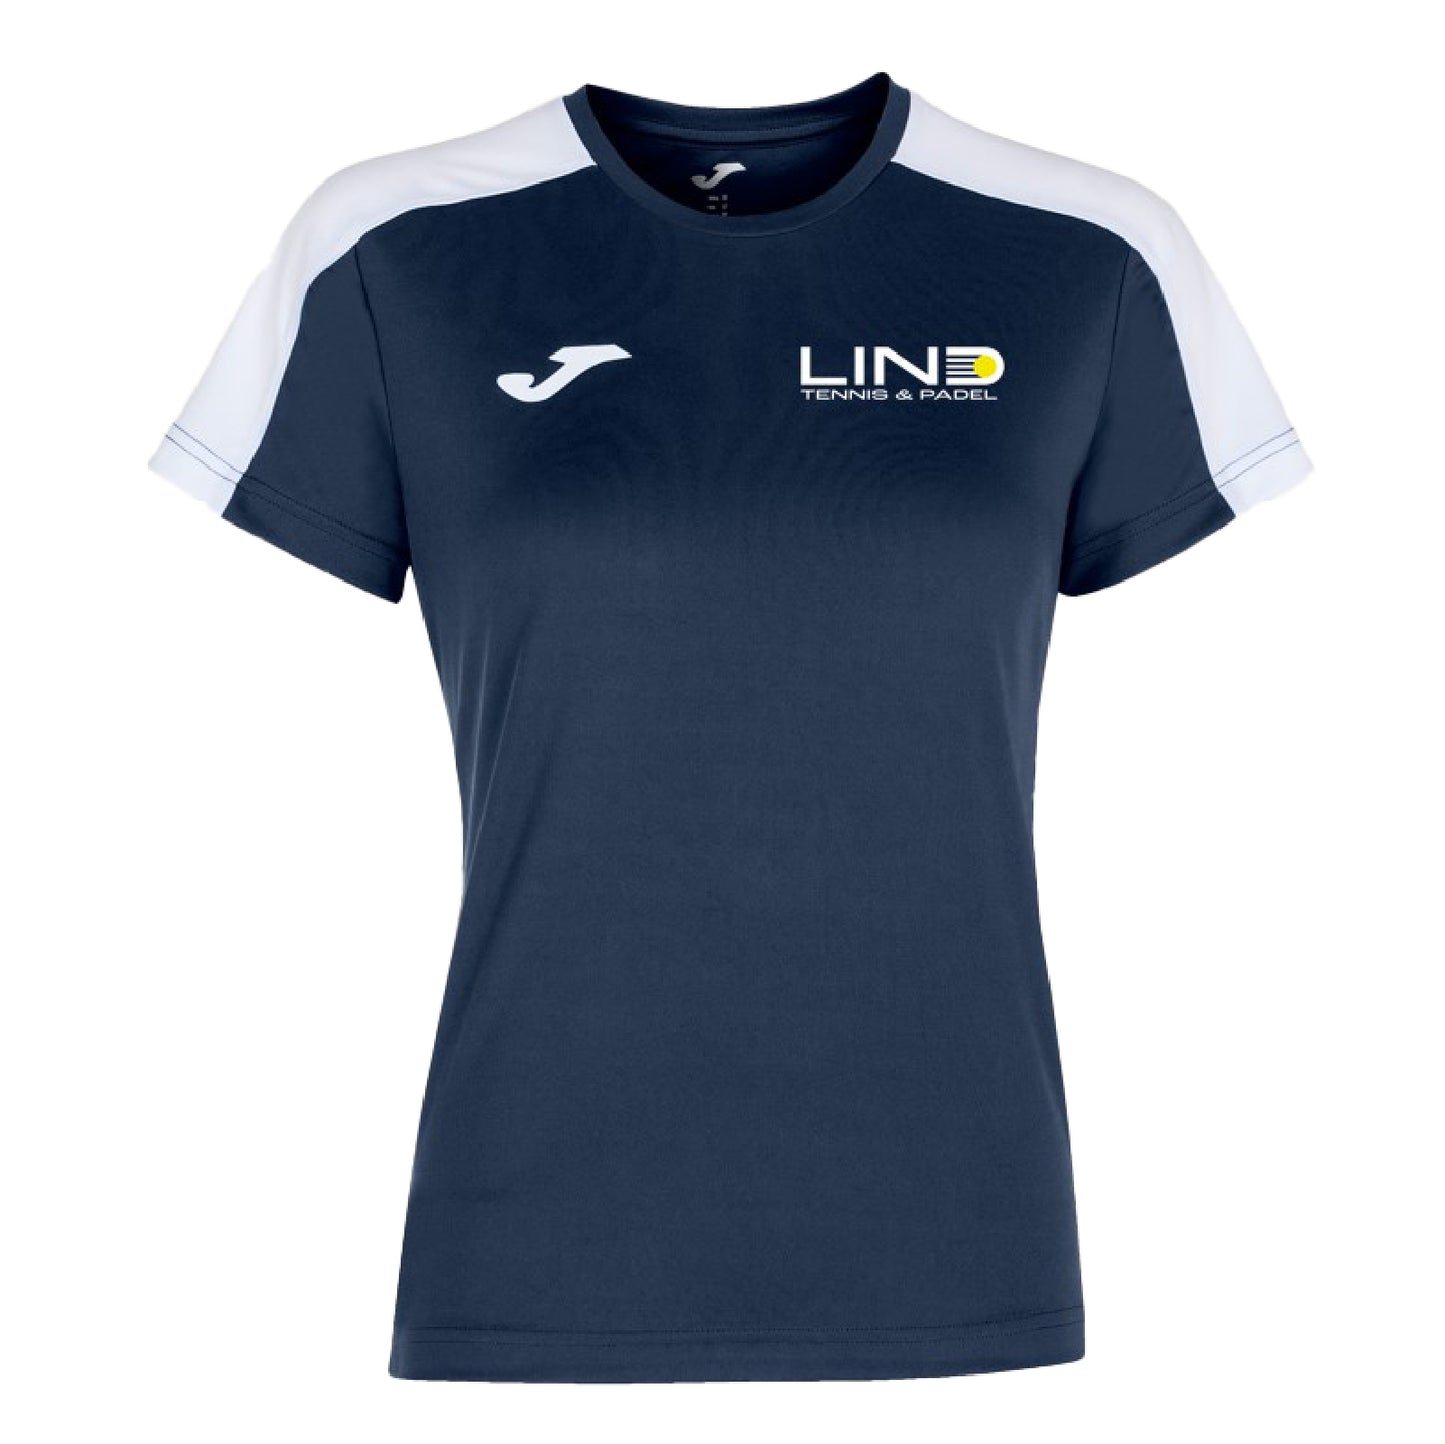 Lind Tennis & Padel spillertrøje med klublogo i kvinde- og herremodel